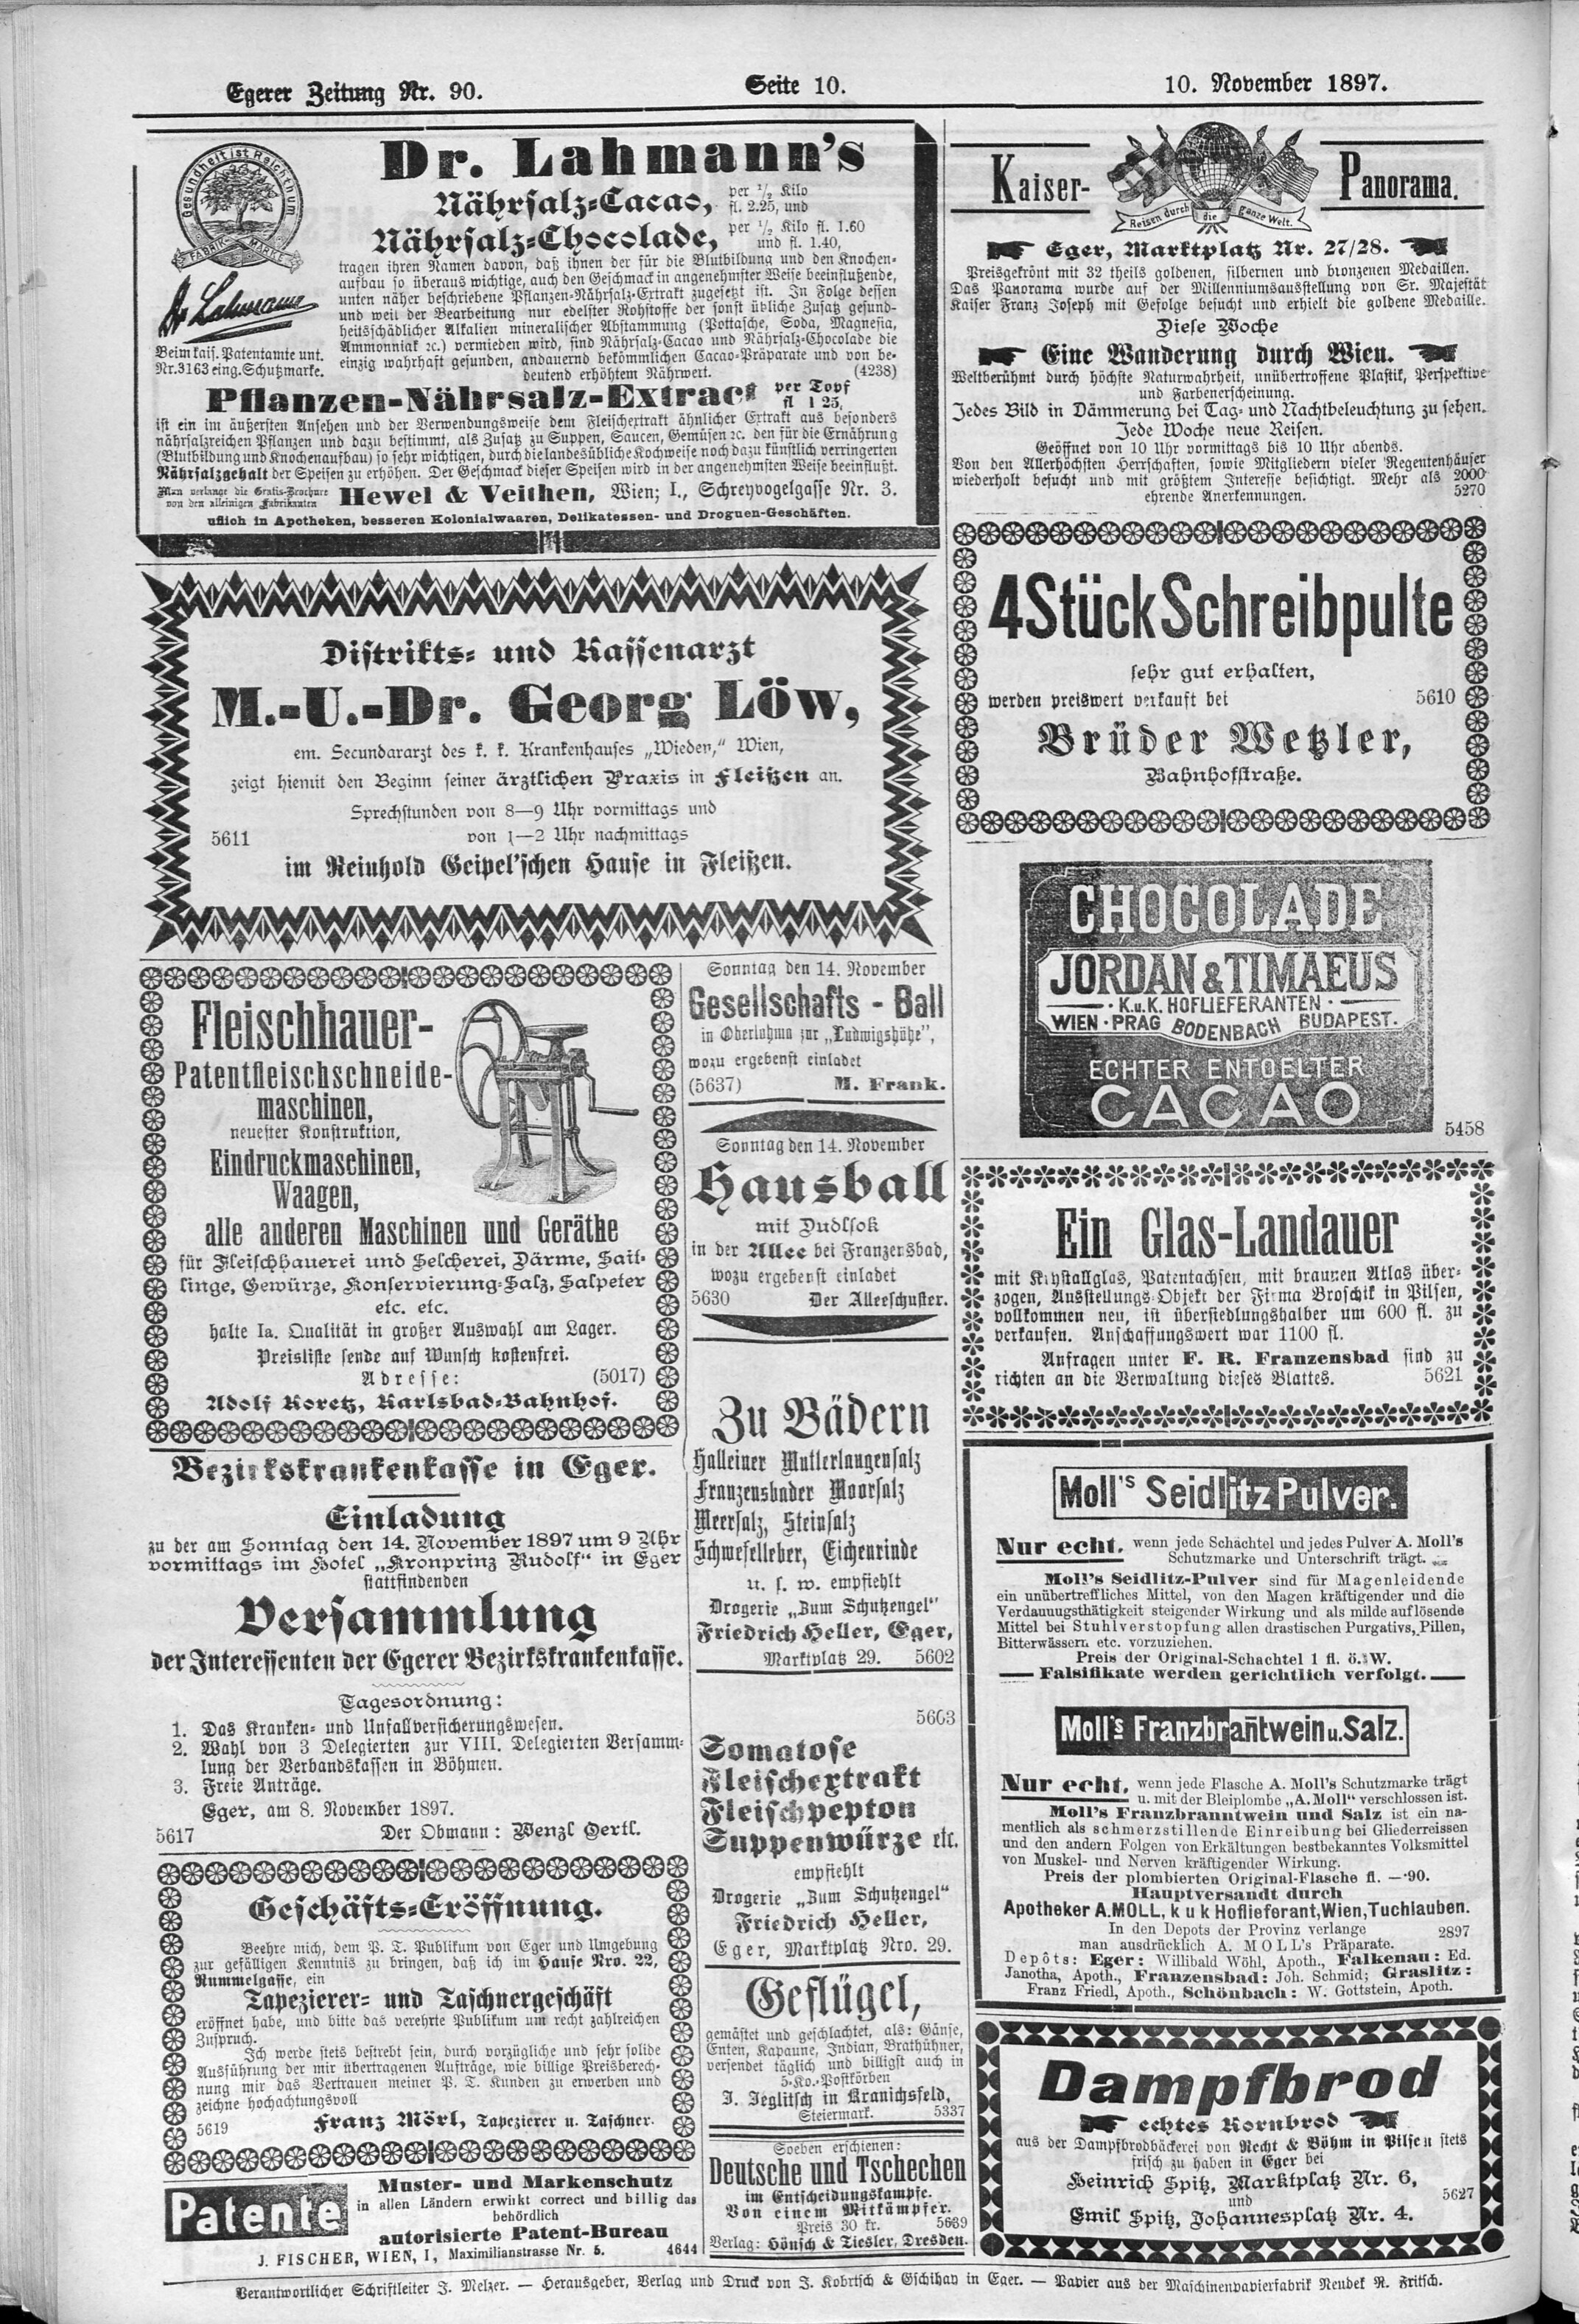 10. egerer-zeitung-1897-11-10-n90_4500